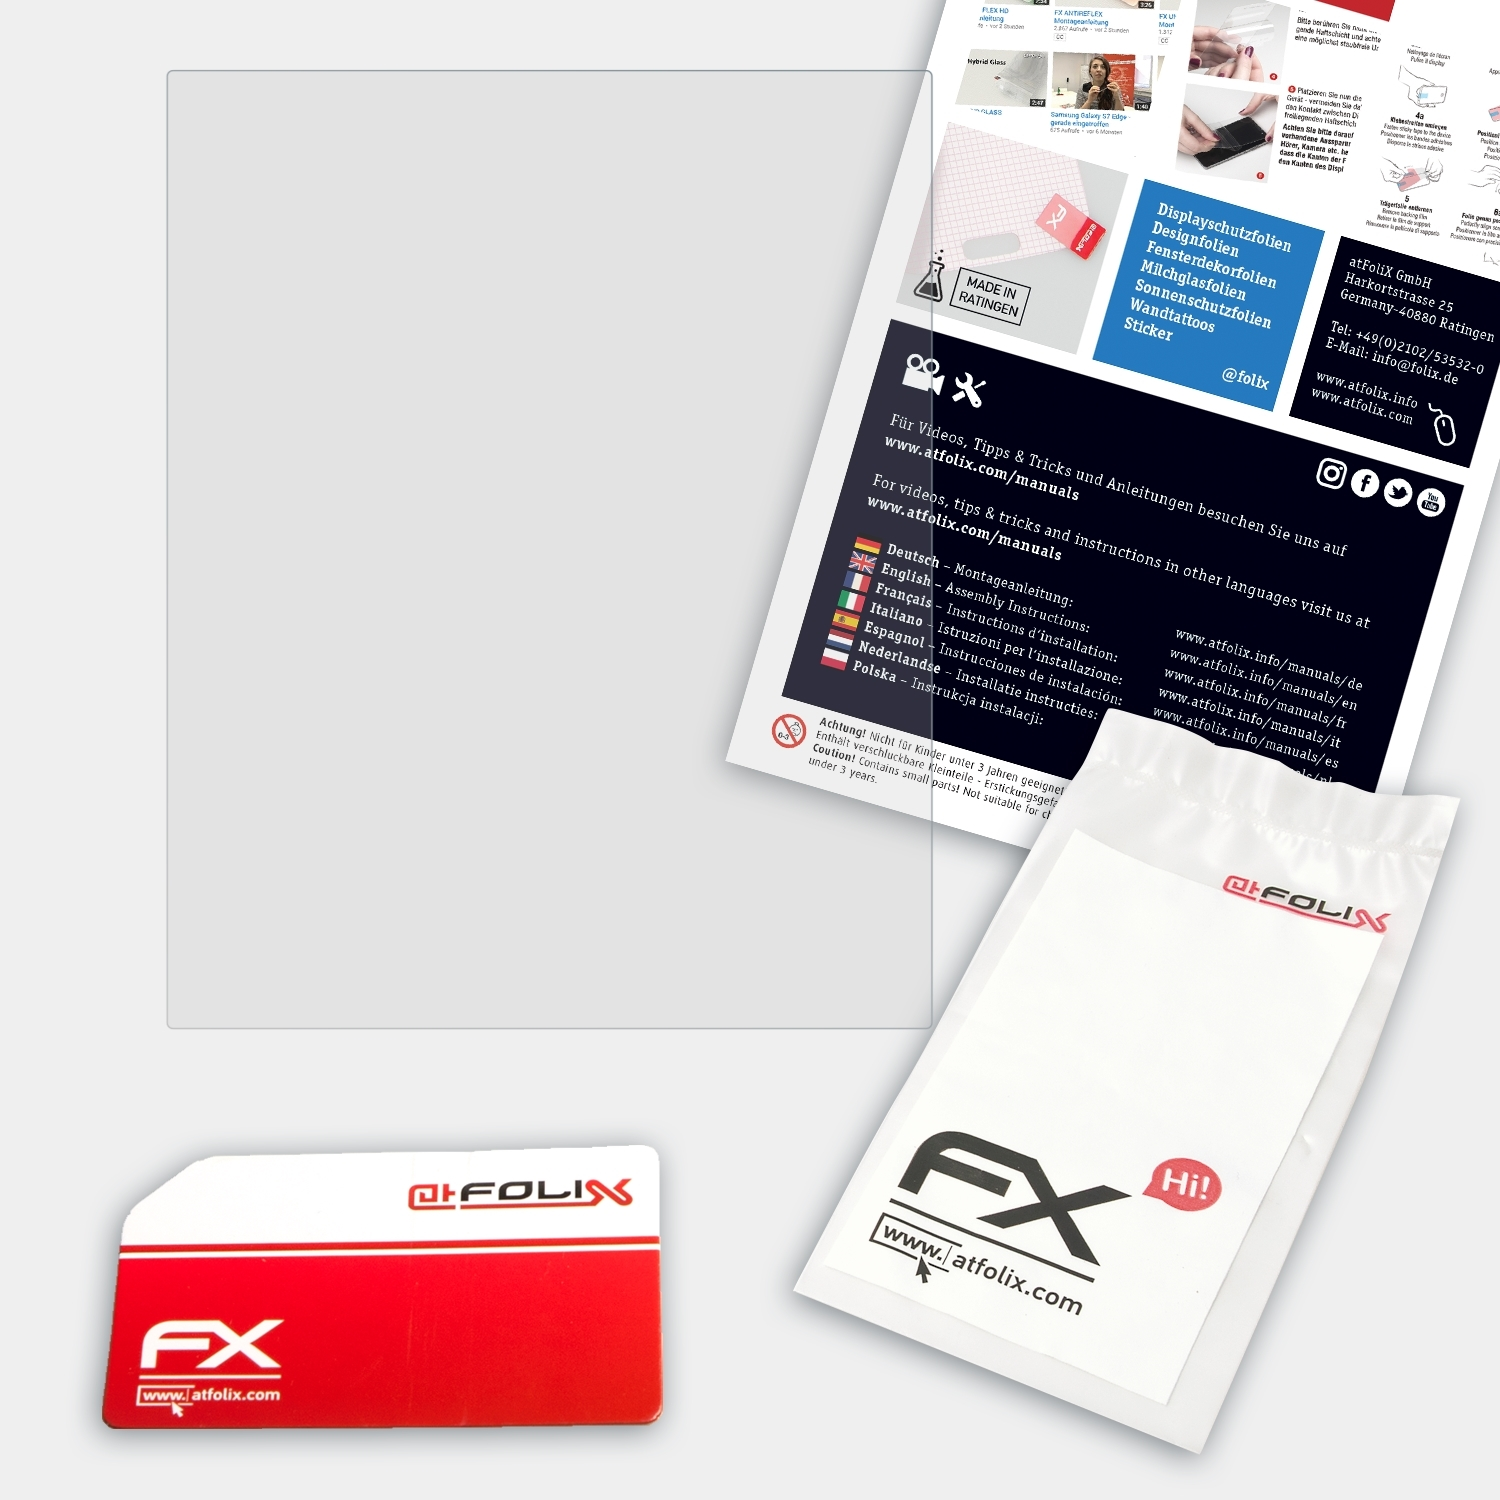 ATFOLIX FX-Antireflex Displayschutz(für Hasselblad CFV-50c)